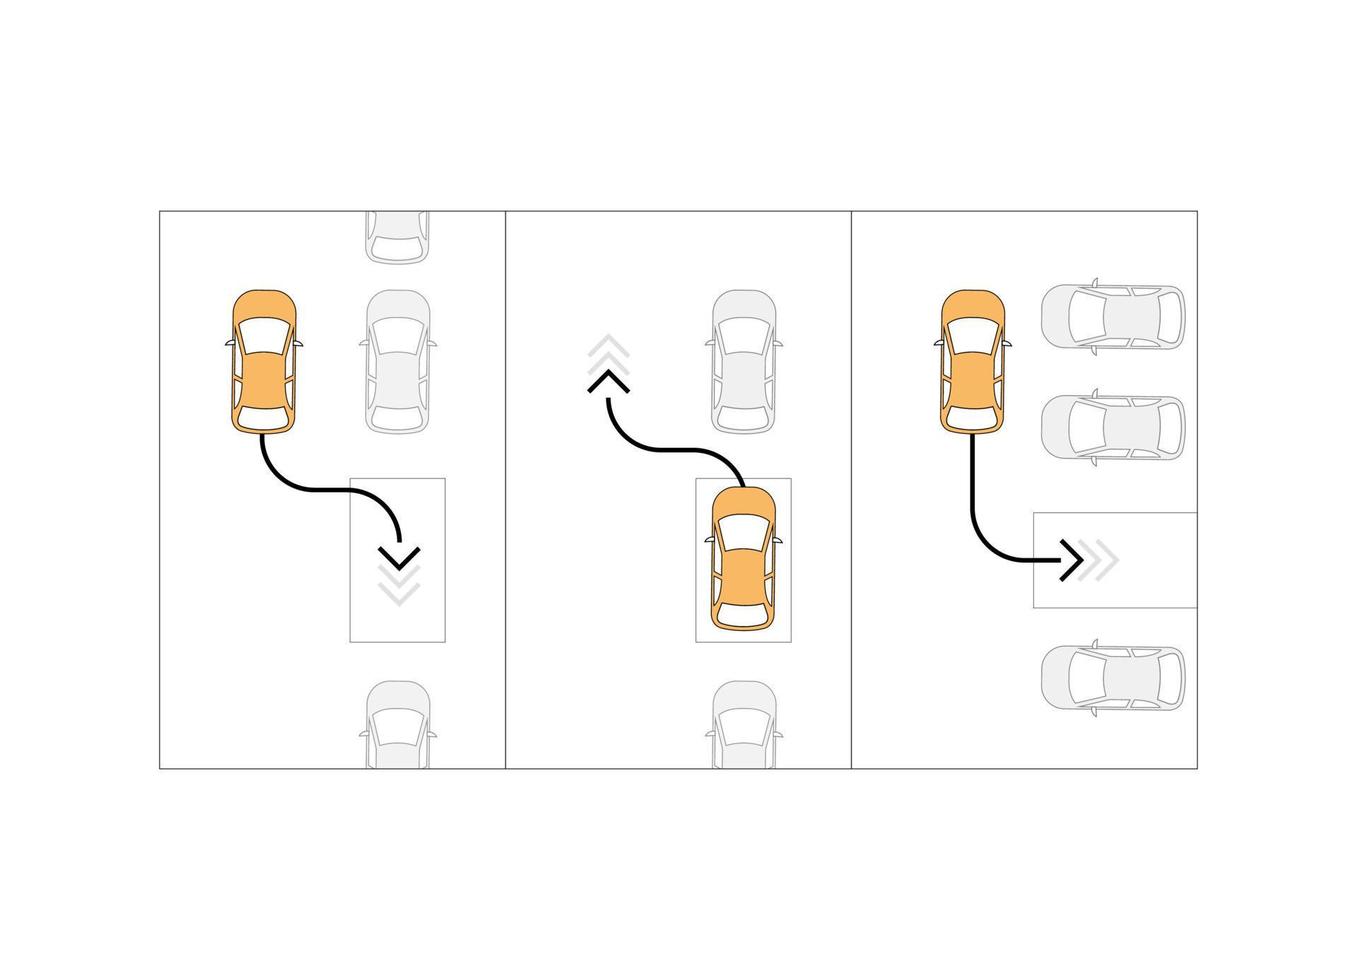 sistema de estacionamiento automático de automóviles. Sensor de aparcamiento sin conductor. estacionamiento horizontal y vertical. dibujo de croquis moderno. icono de línea editable. vector